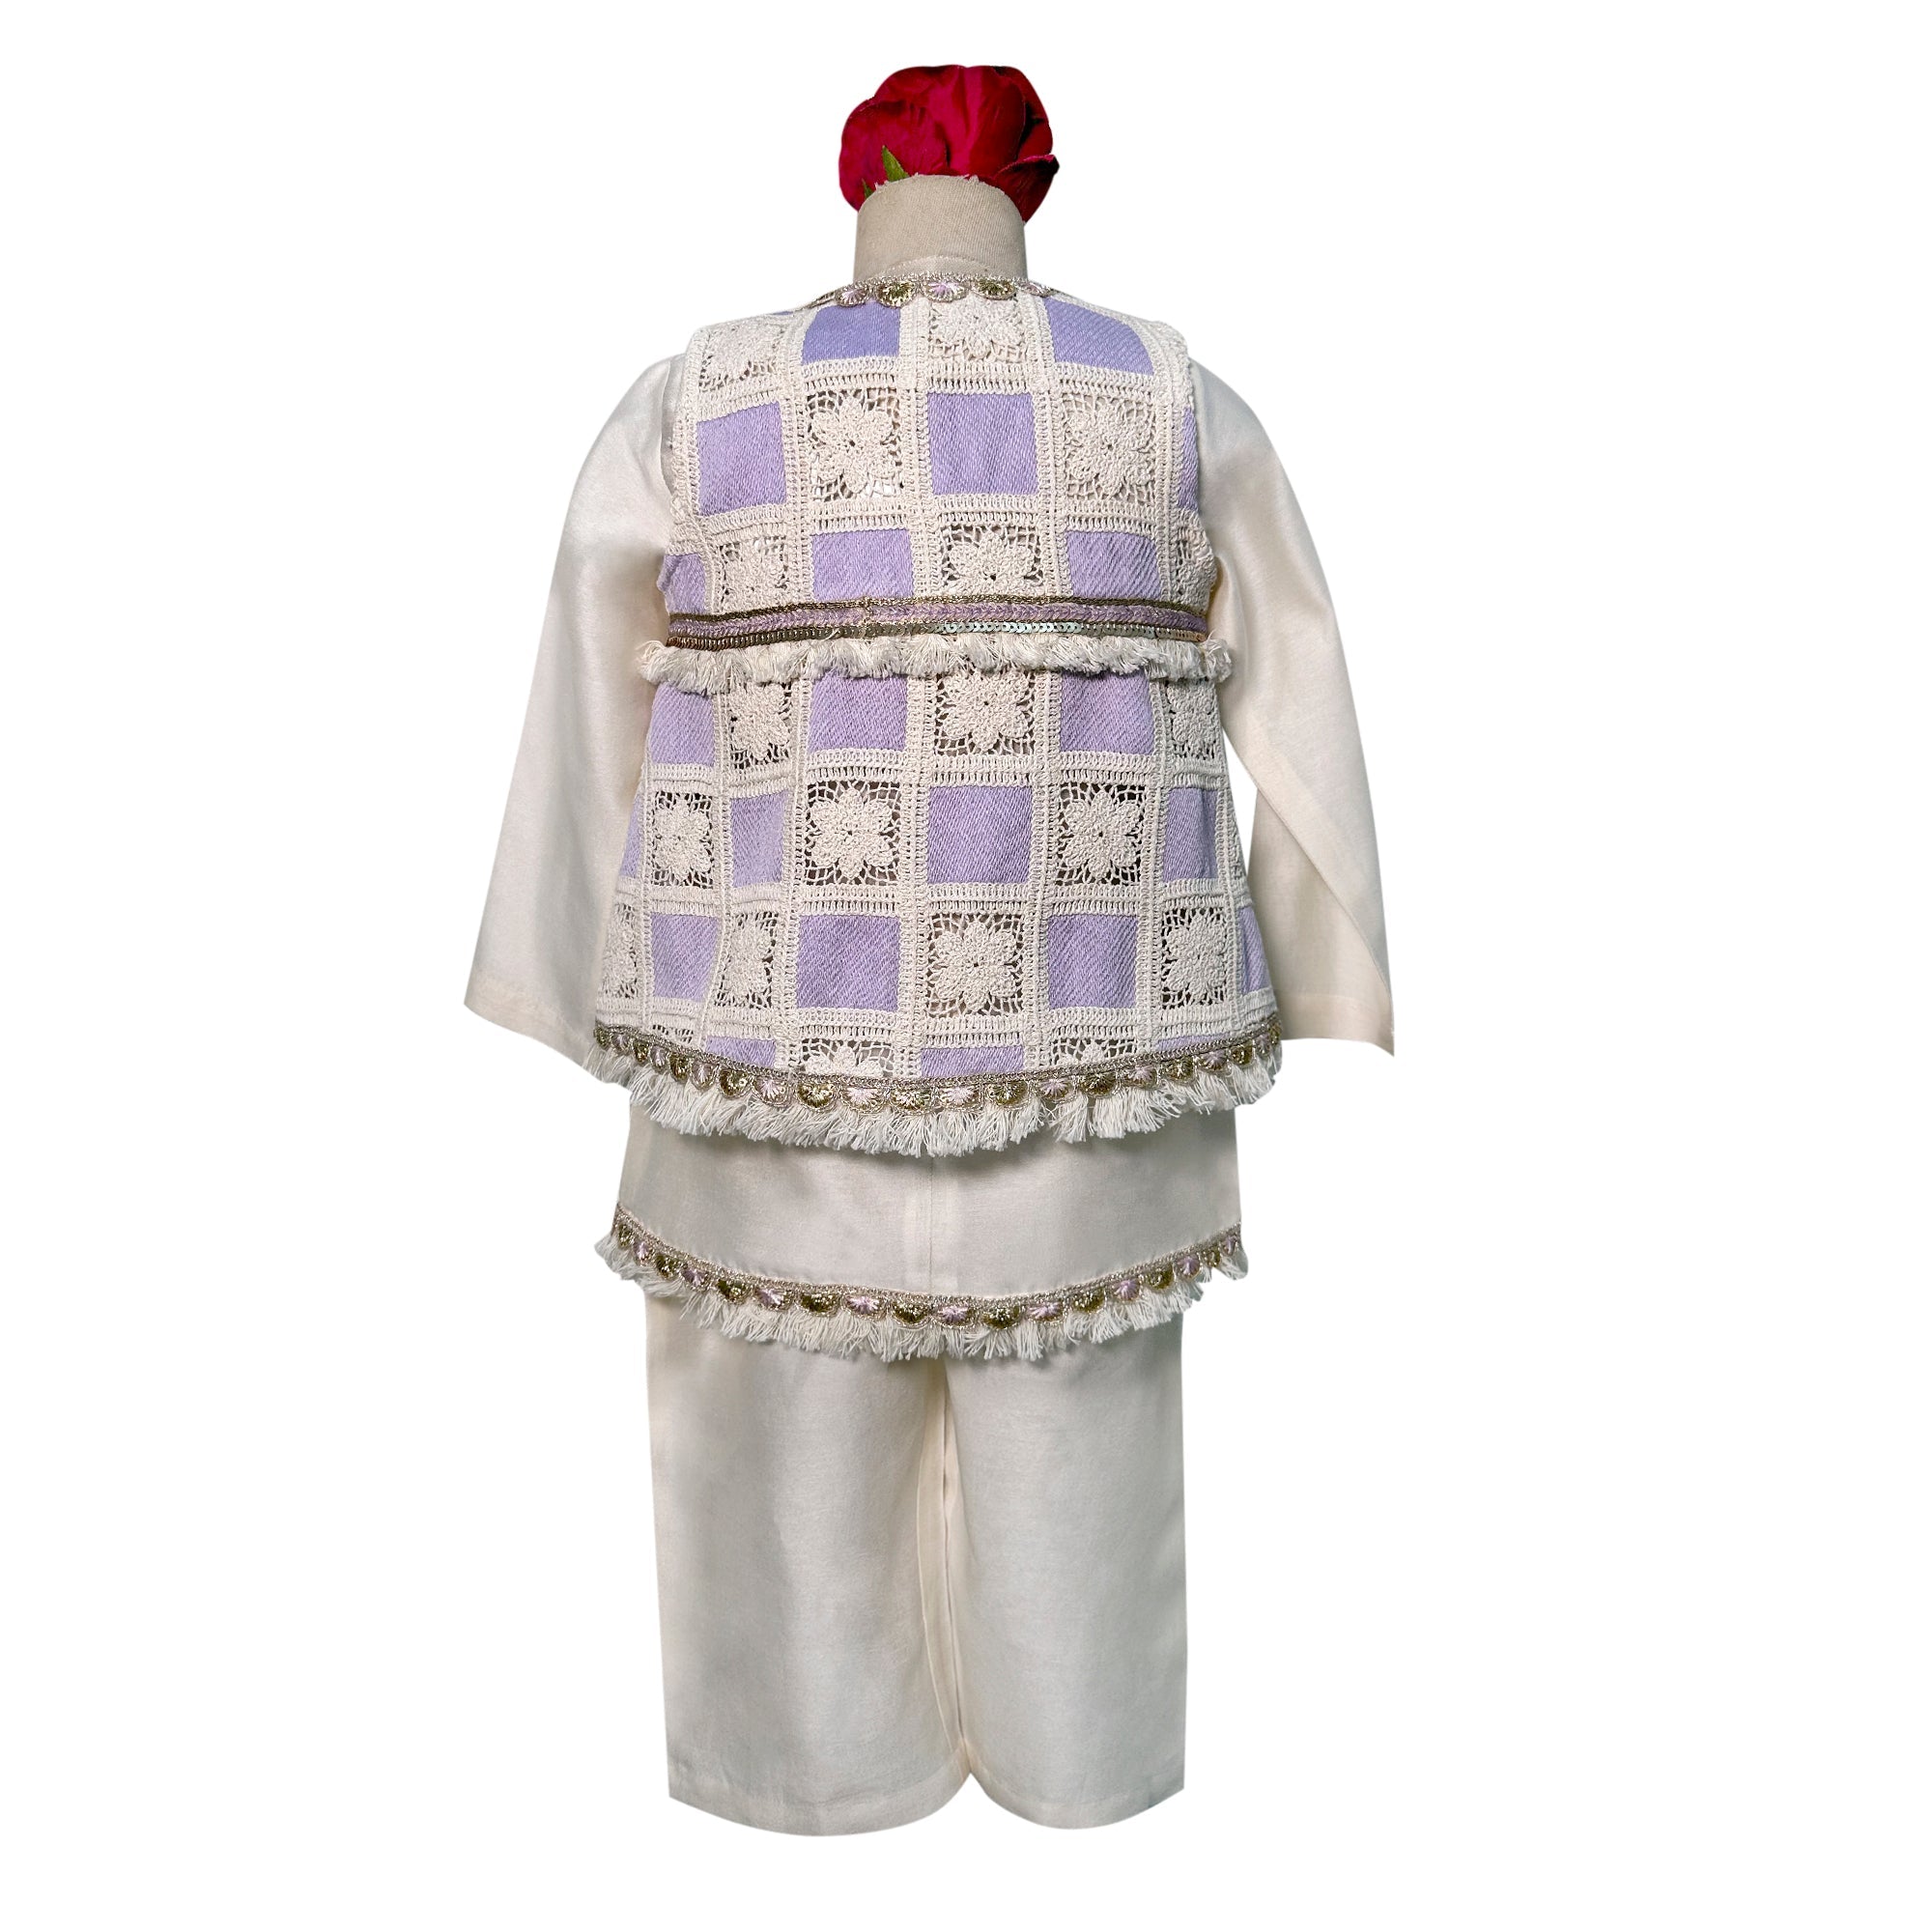 Chandheri Kurta Pajama with Crochet Sleeveless Jacket